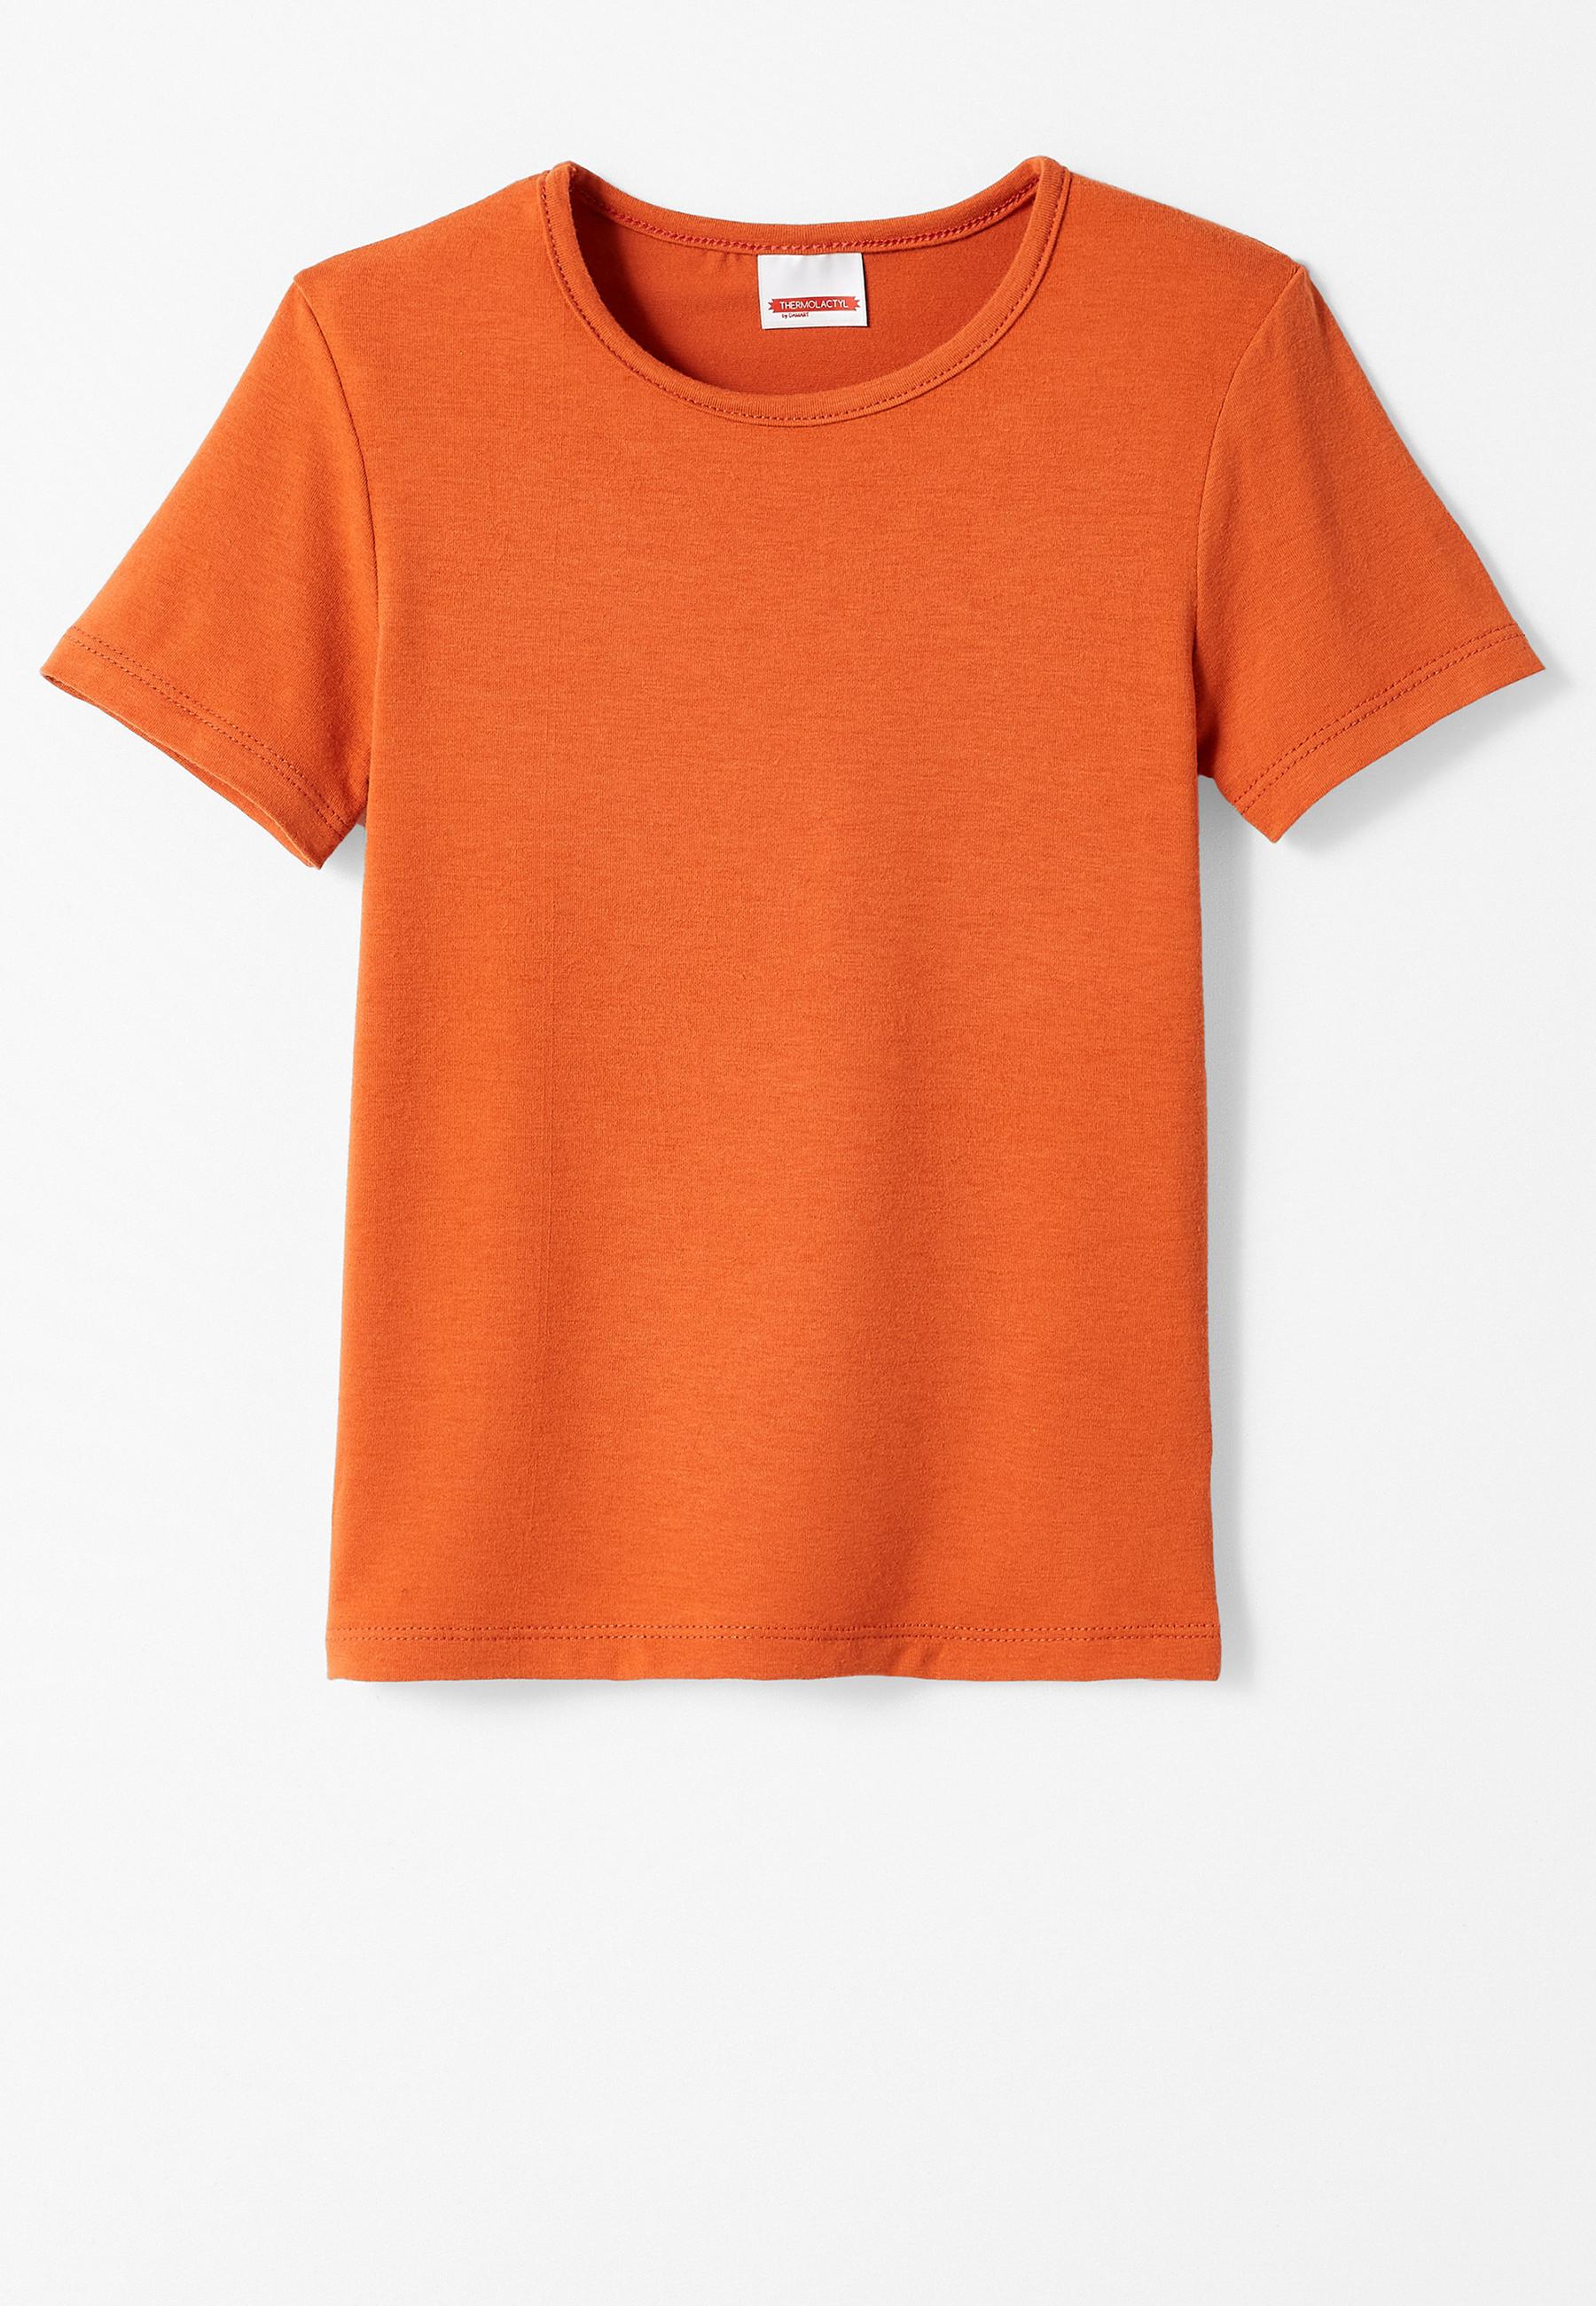 T-shirt. Jungen Orange 152 von Damart